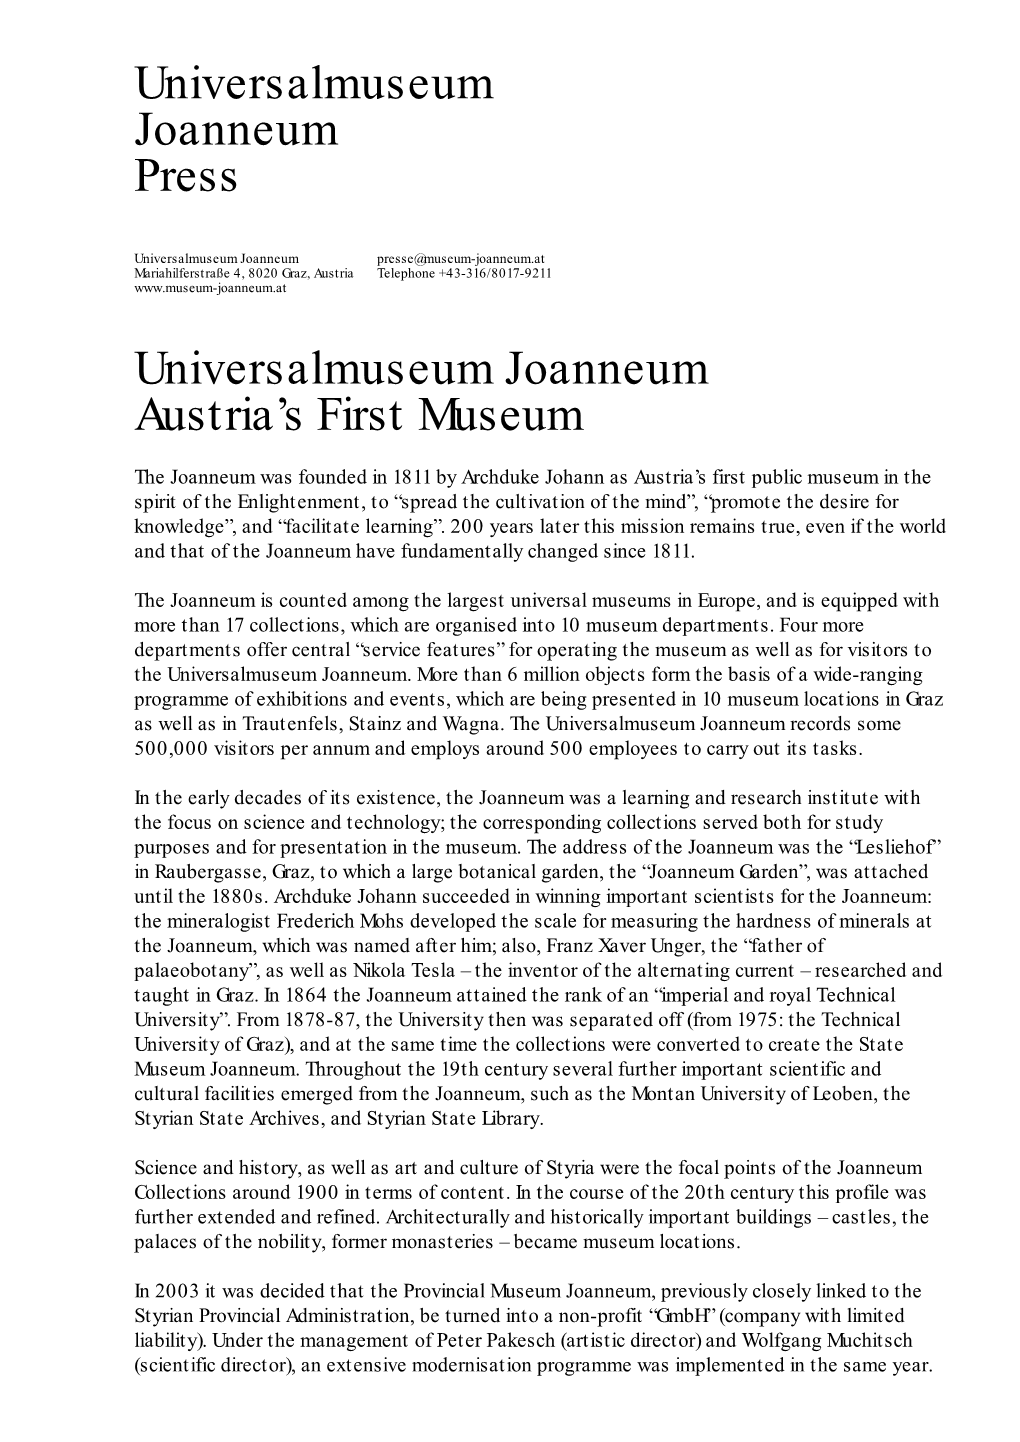 Universalmuseum Joanneum Austria's First Museum